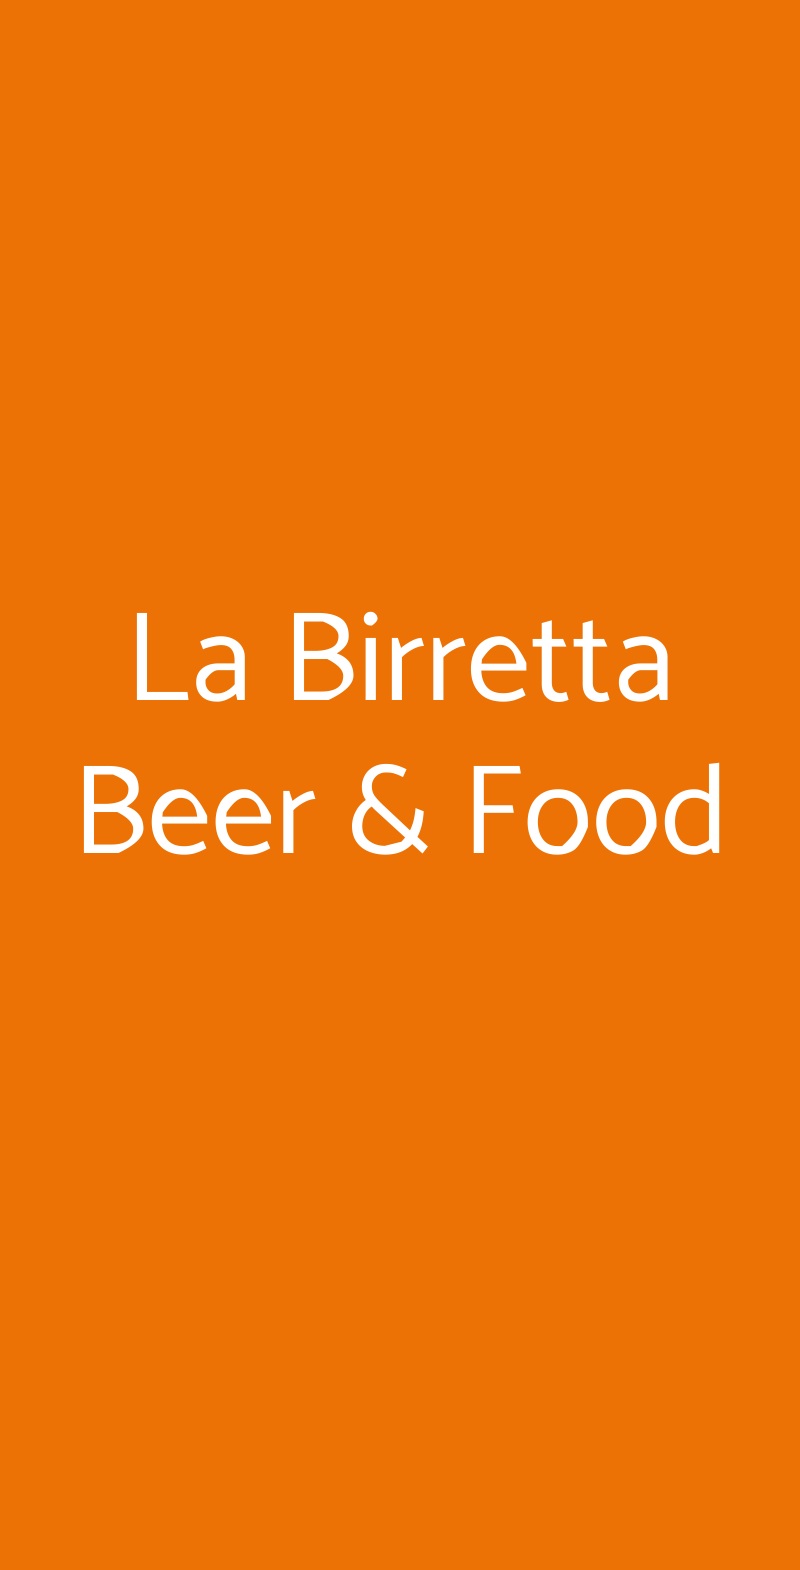 La Birretta Beer & Food Milano menù 1 pagina